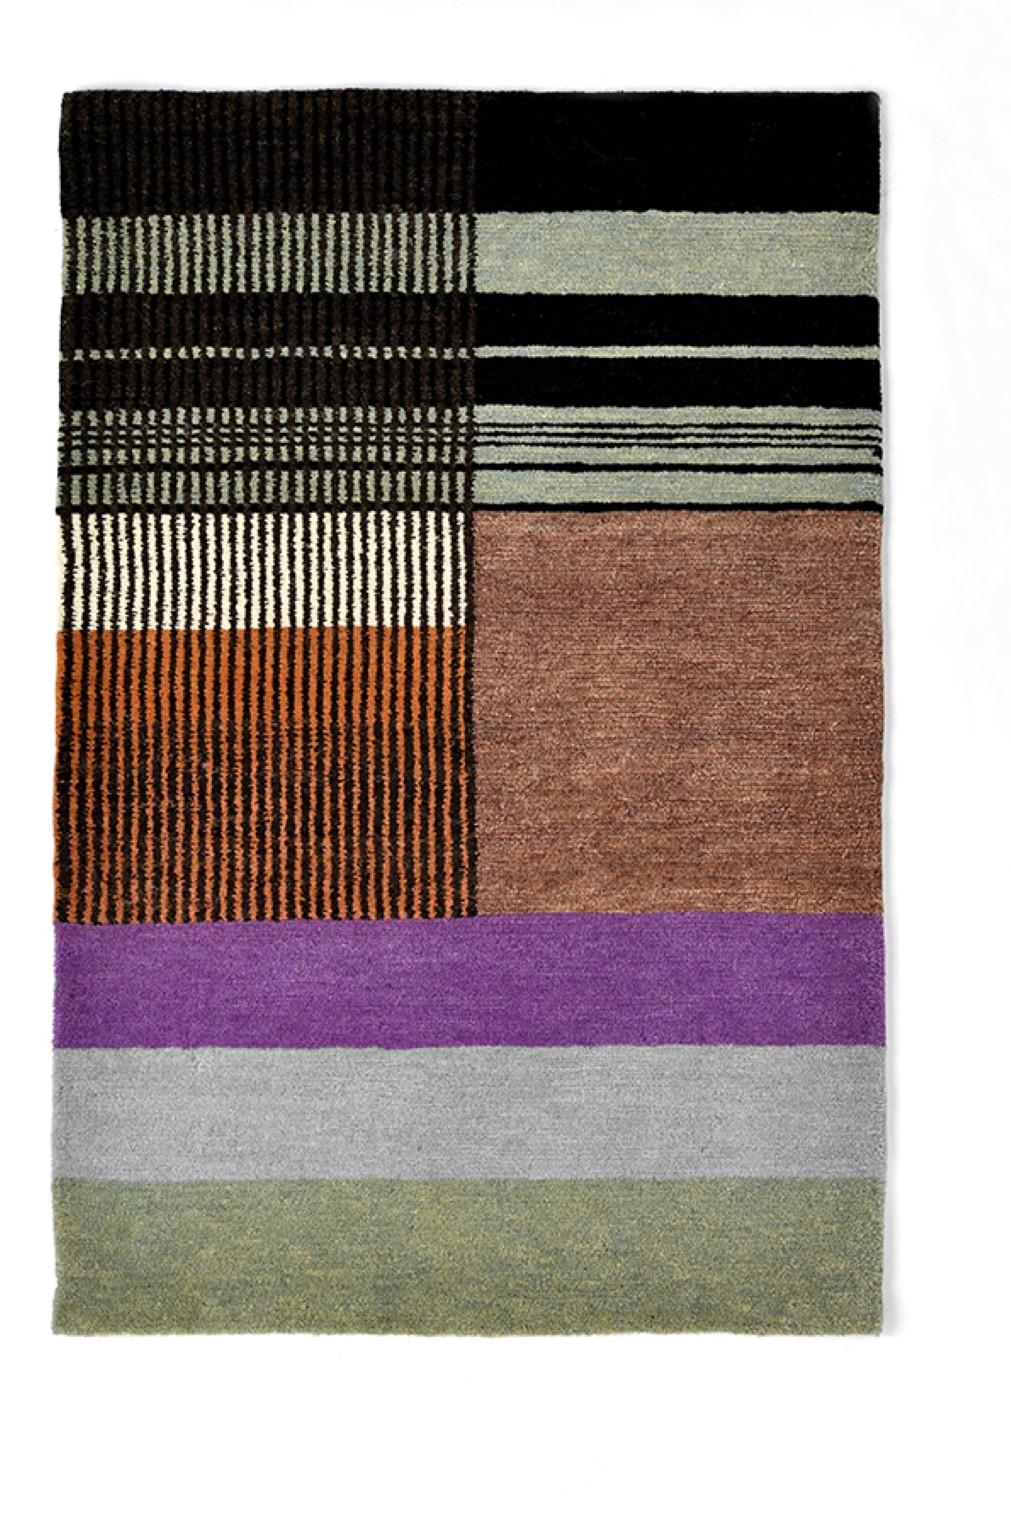 Nr. 233 handgeknüpftes Textilposter von Lyk Carpet
Hommage an die Bauhausfrauen
Abmessungen: B 56 x L 84 cm.
MATERIALIEN: 100% tibetische Hochlandwolle, handgekämmte und handgesponnene Schurwolle, natürliche pflanzengefärbte Wolle, 100 Knoten pro